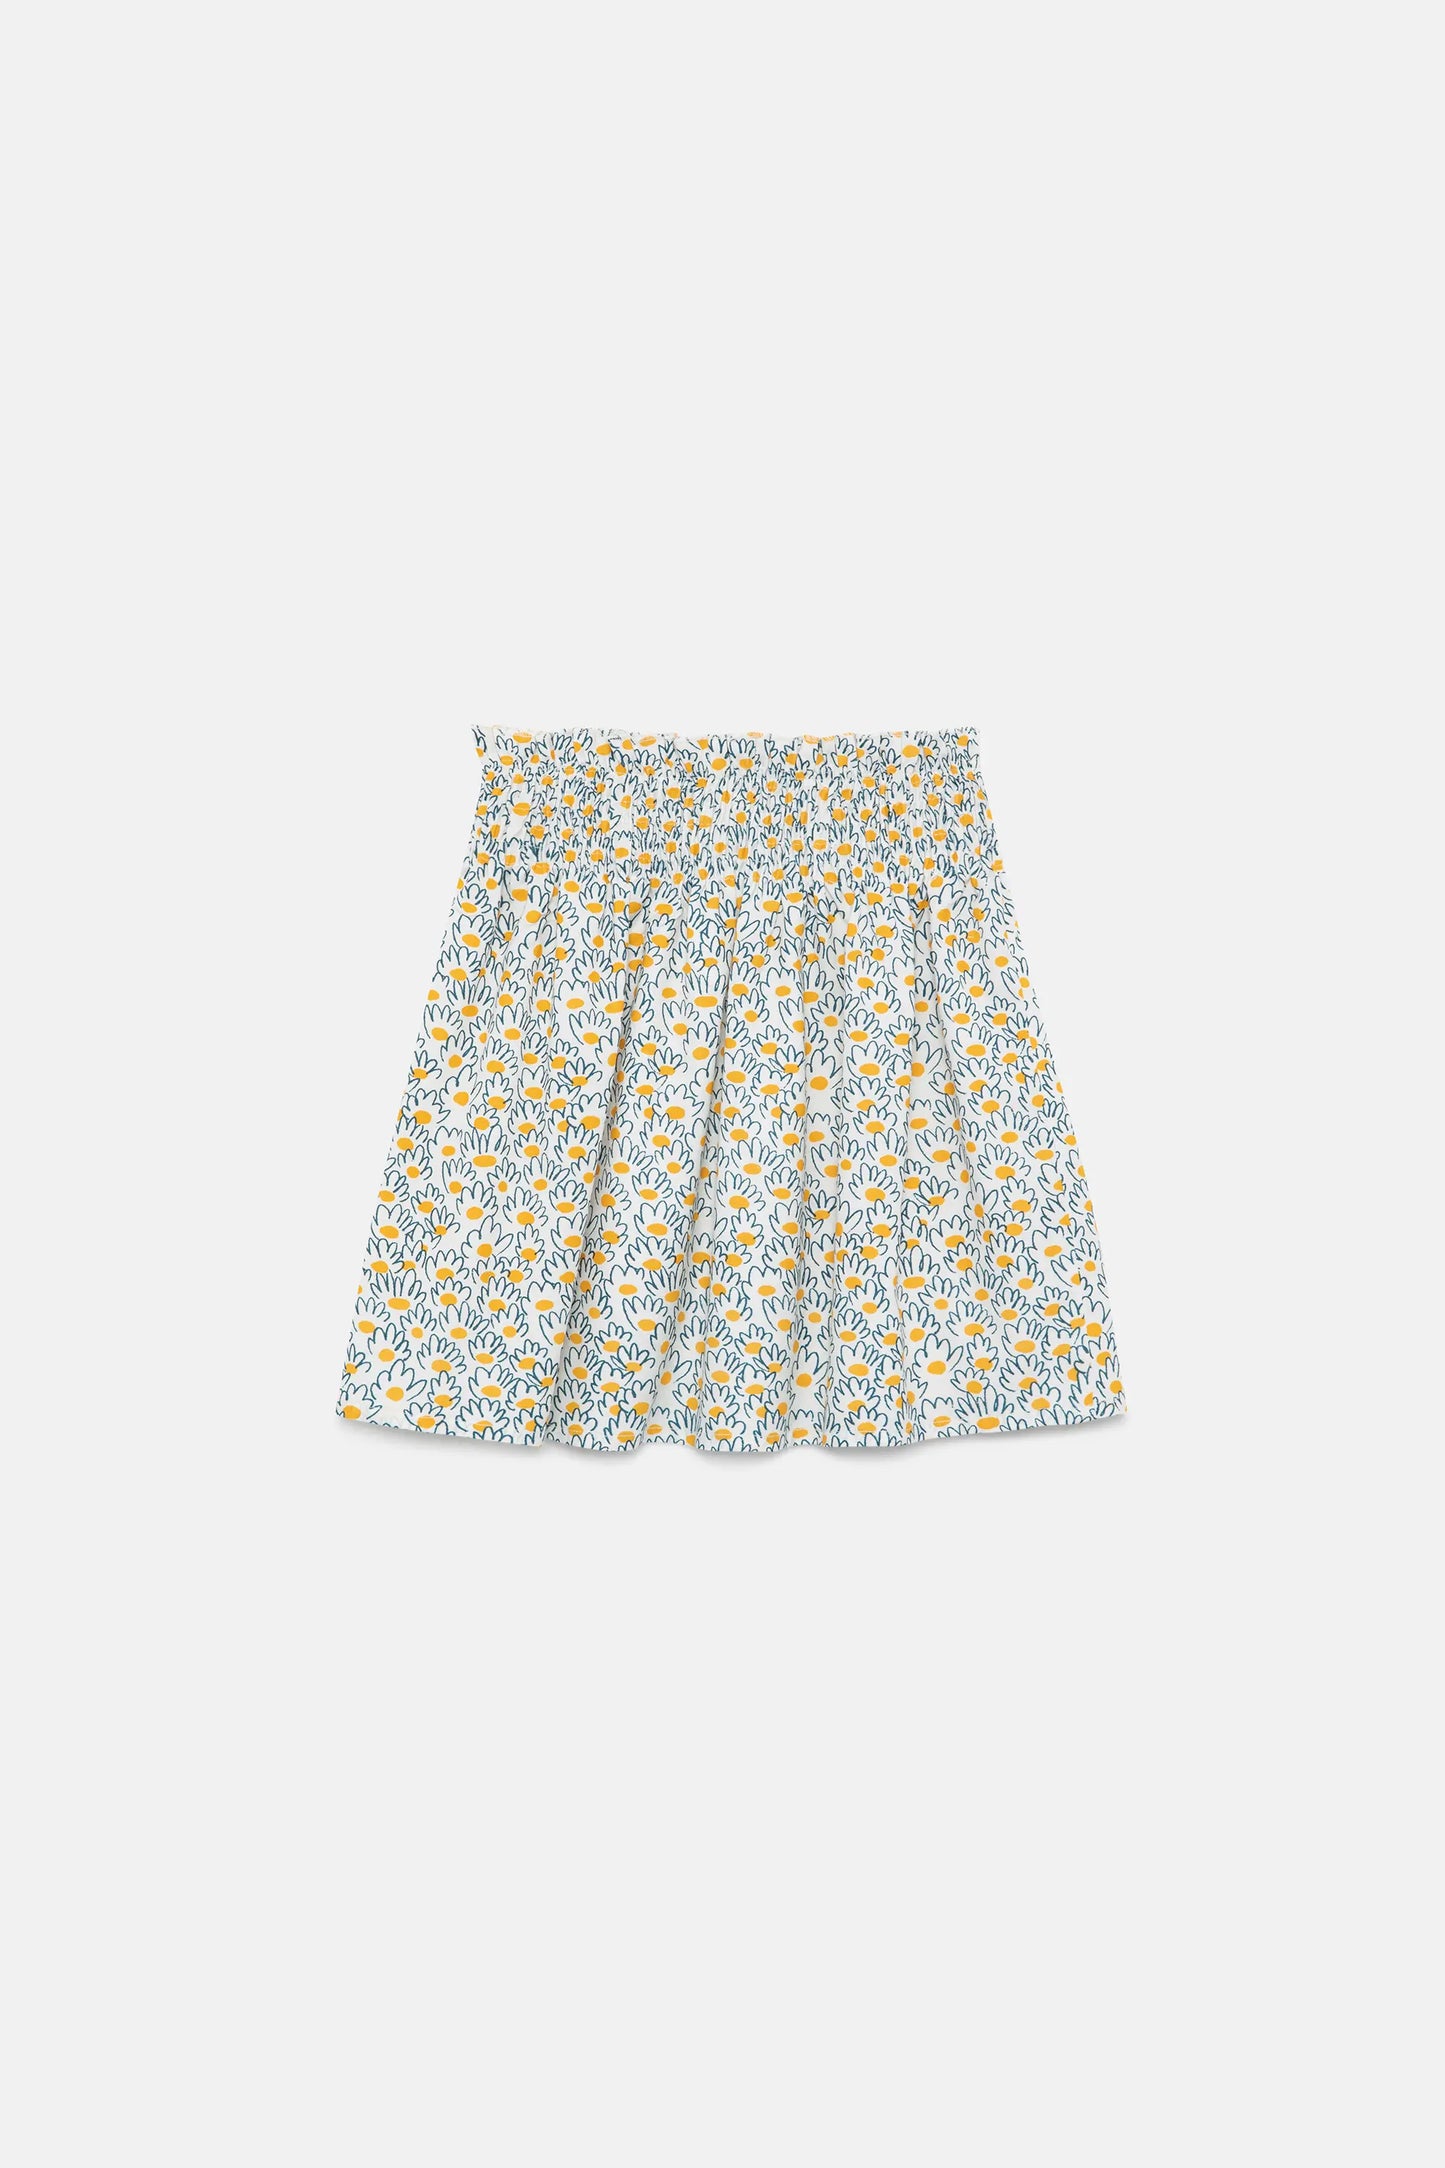 Flower jacquard girl's short skirt